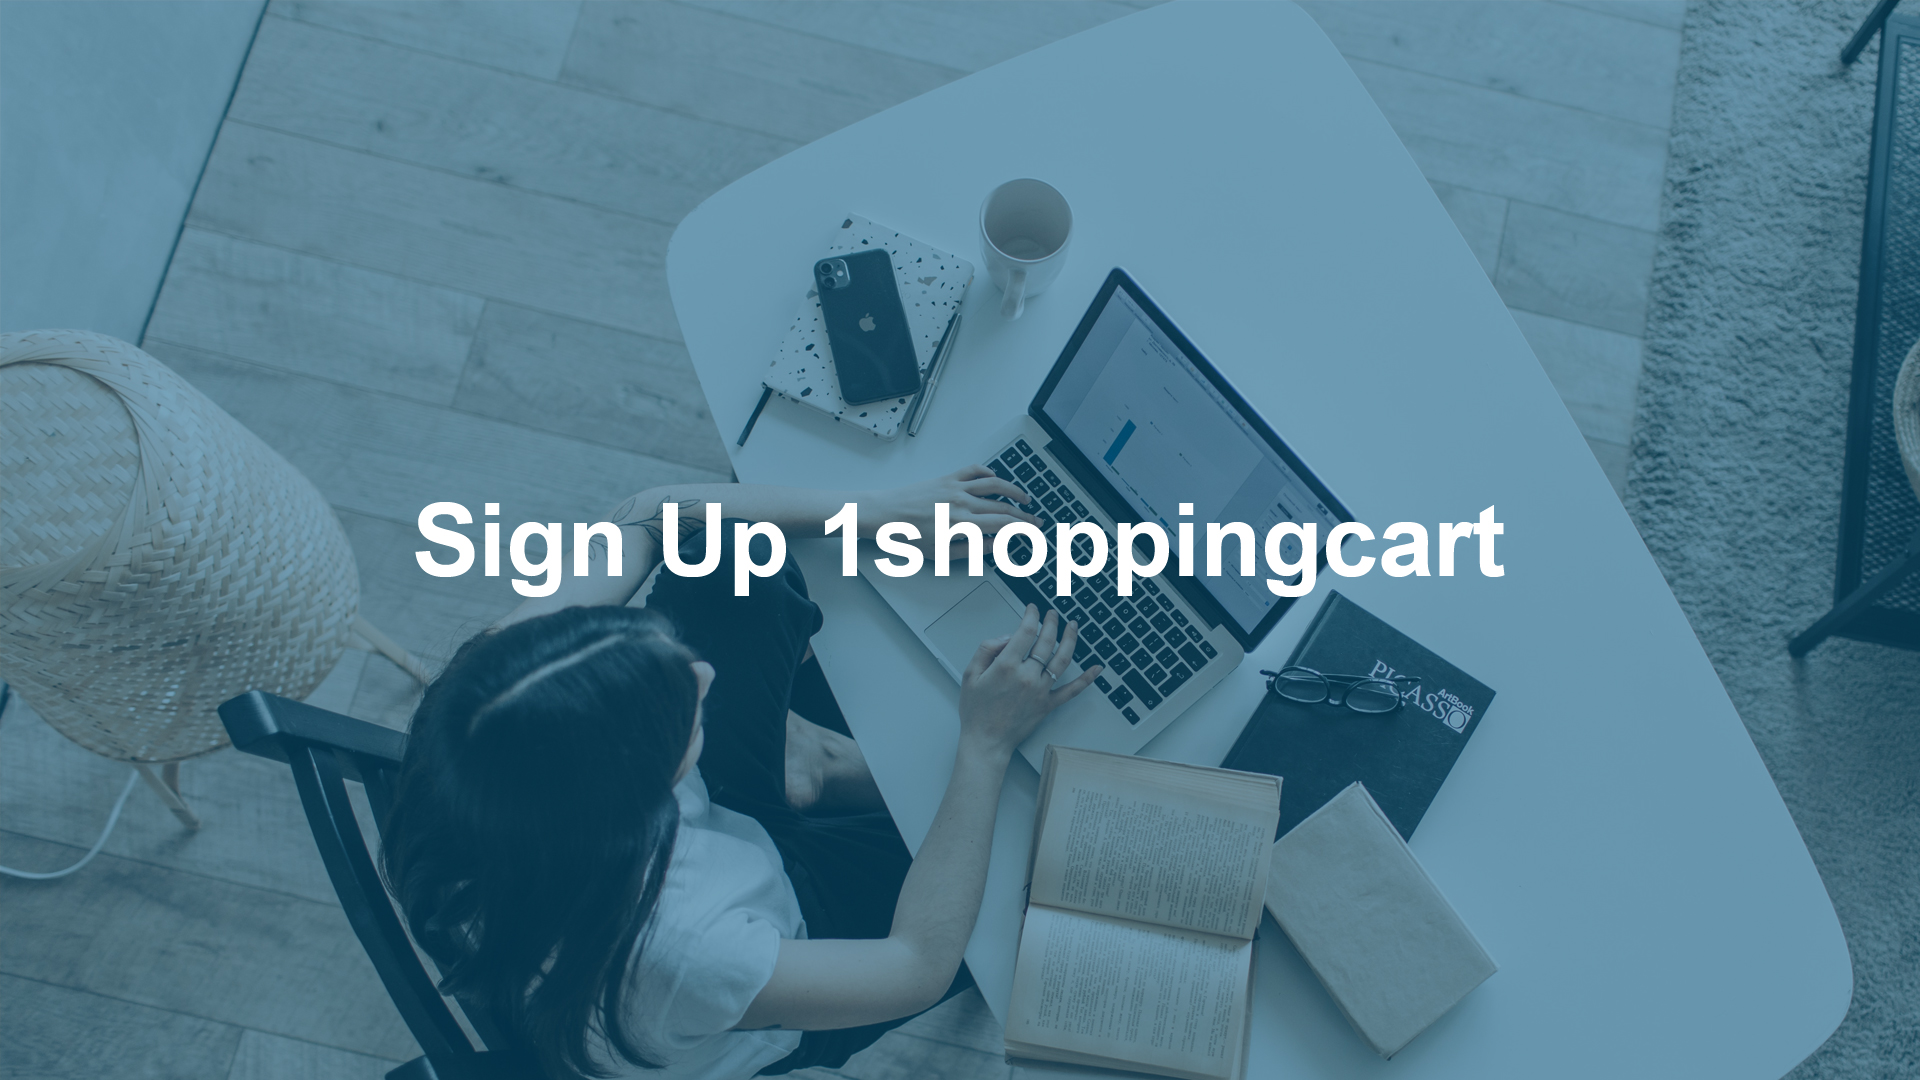 Sign Up 1shoppingcart